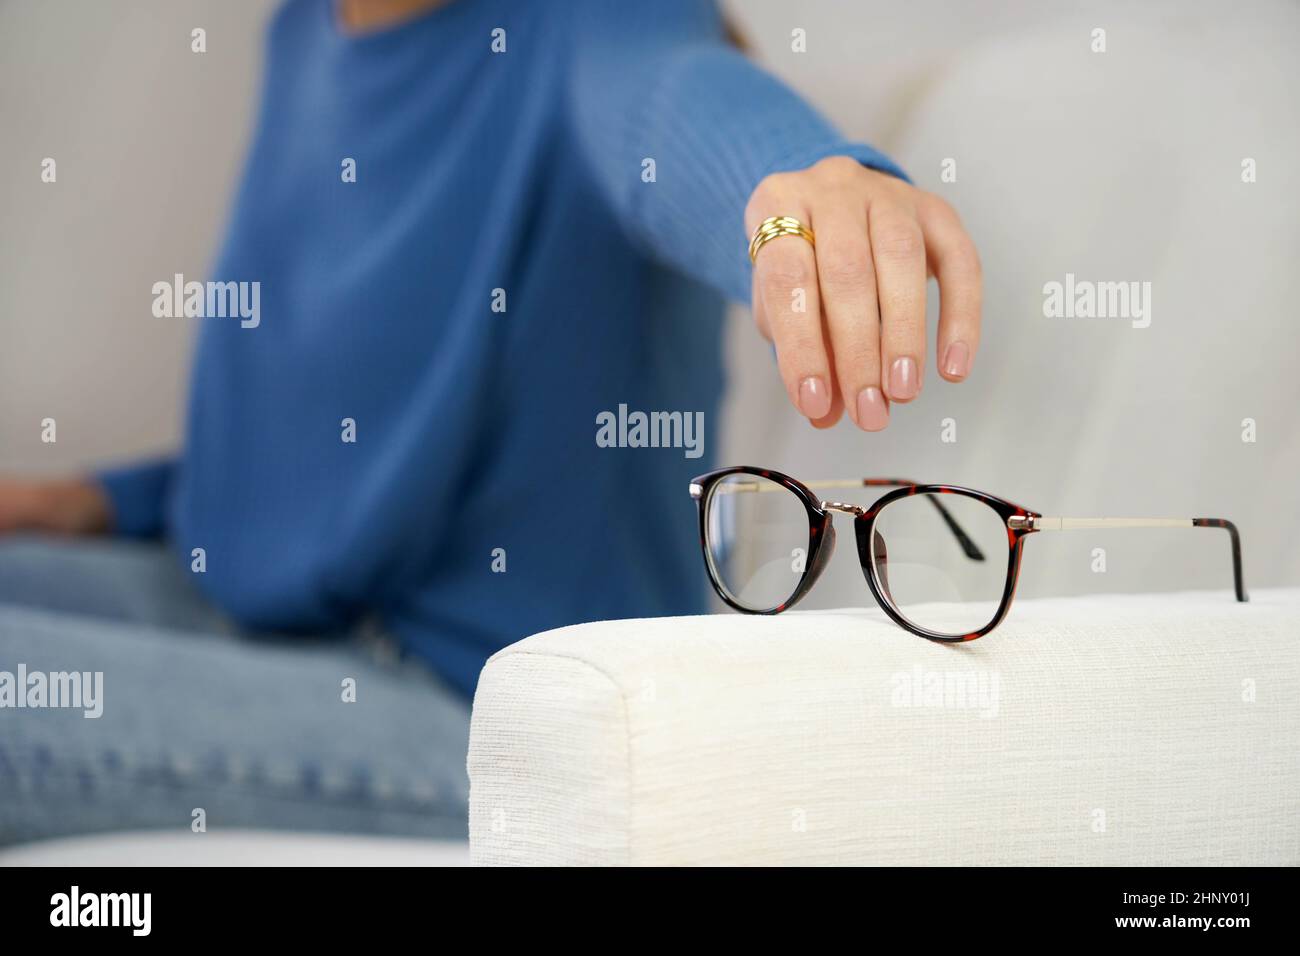 Problème de vue. Femme atteignant pour des lunettes sur le canapé, ayant une mauvaise vue des yeux. Banque D'Images